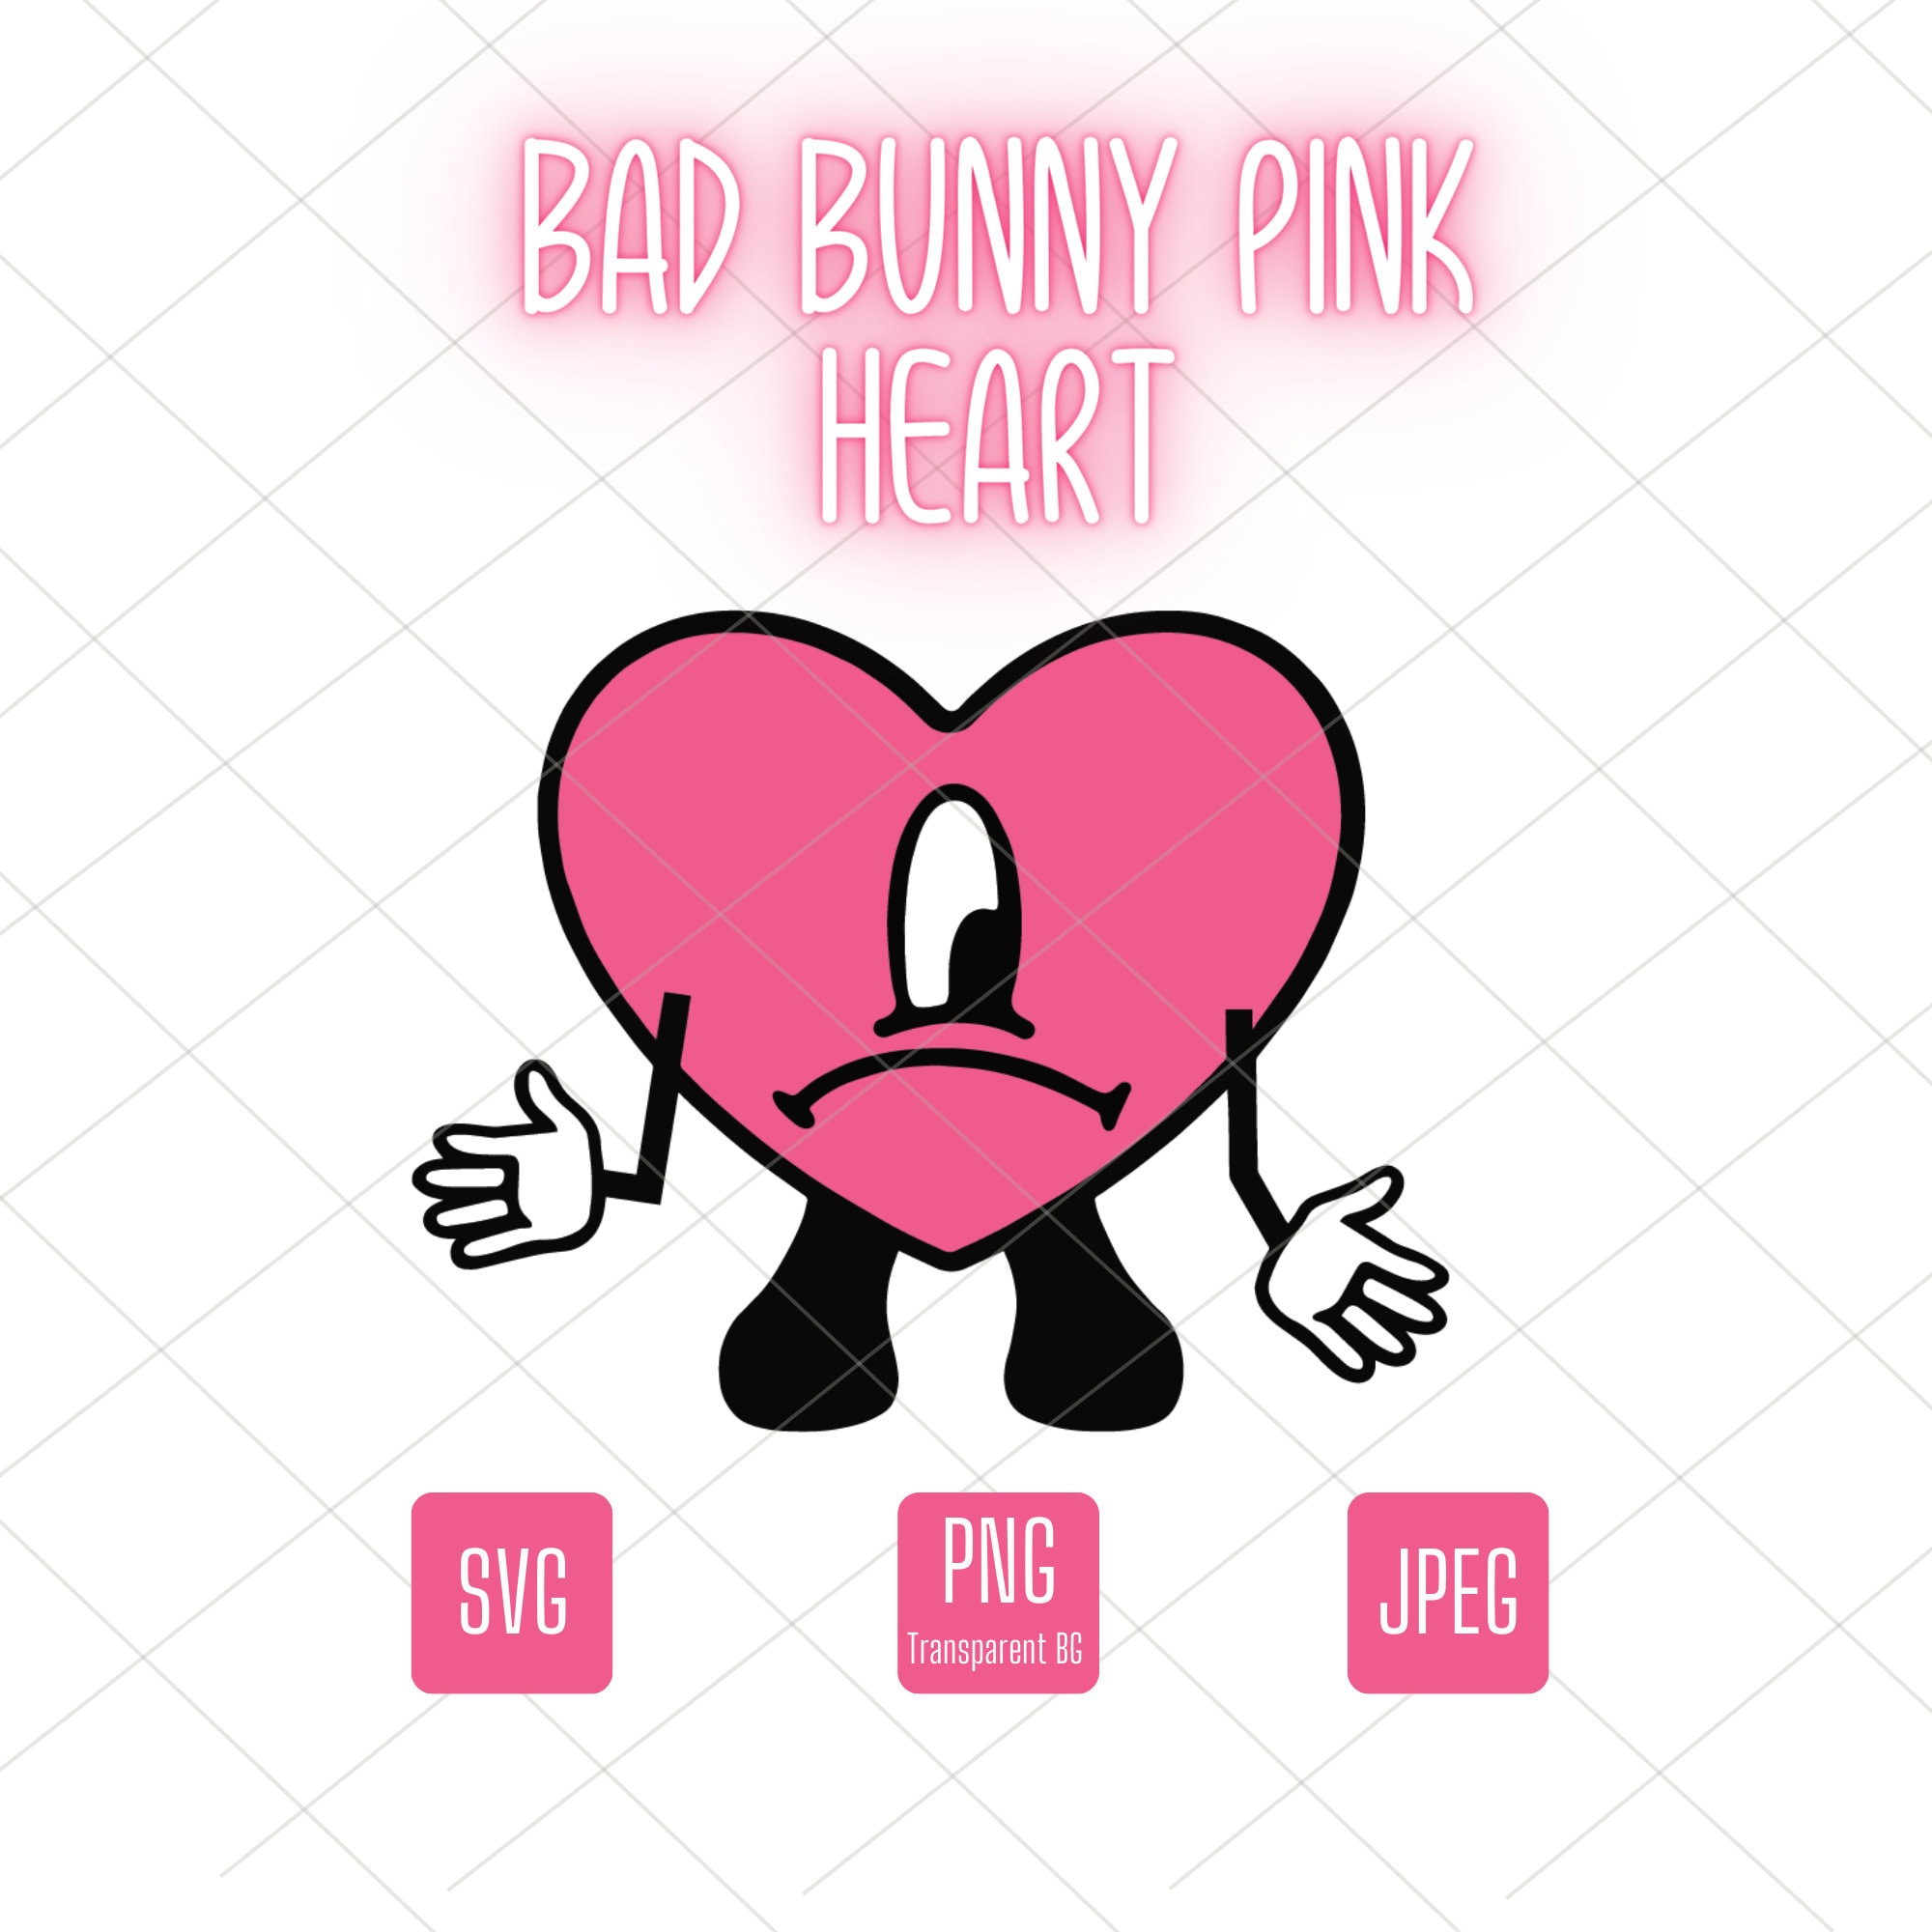 Bad Bunny Pink Heart SVG/PNG/JPEG -  Hong Kong